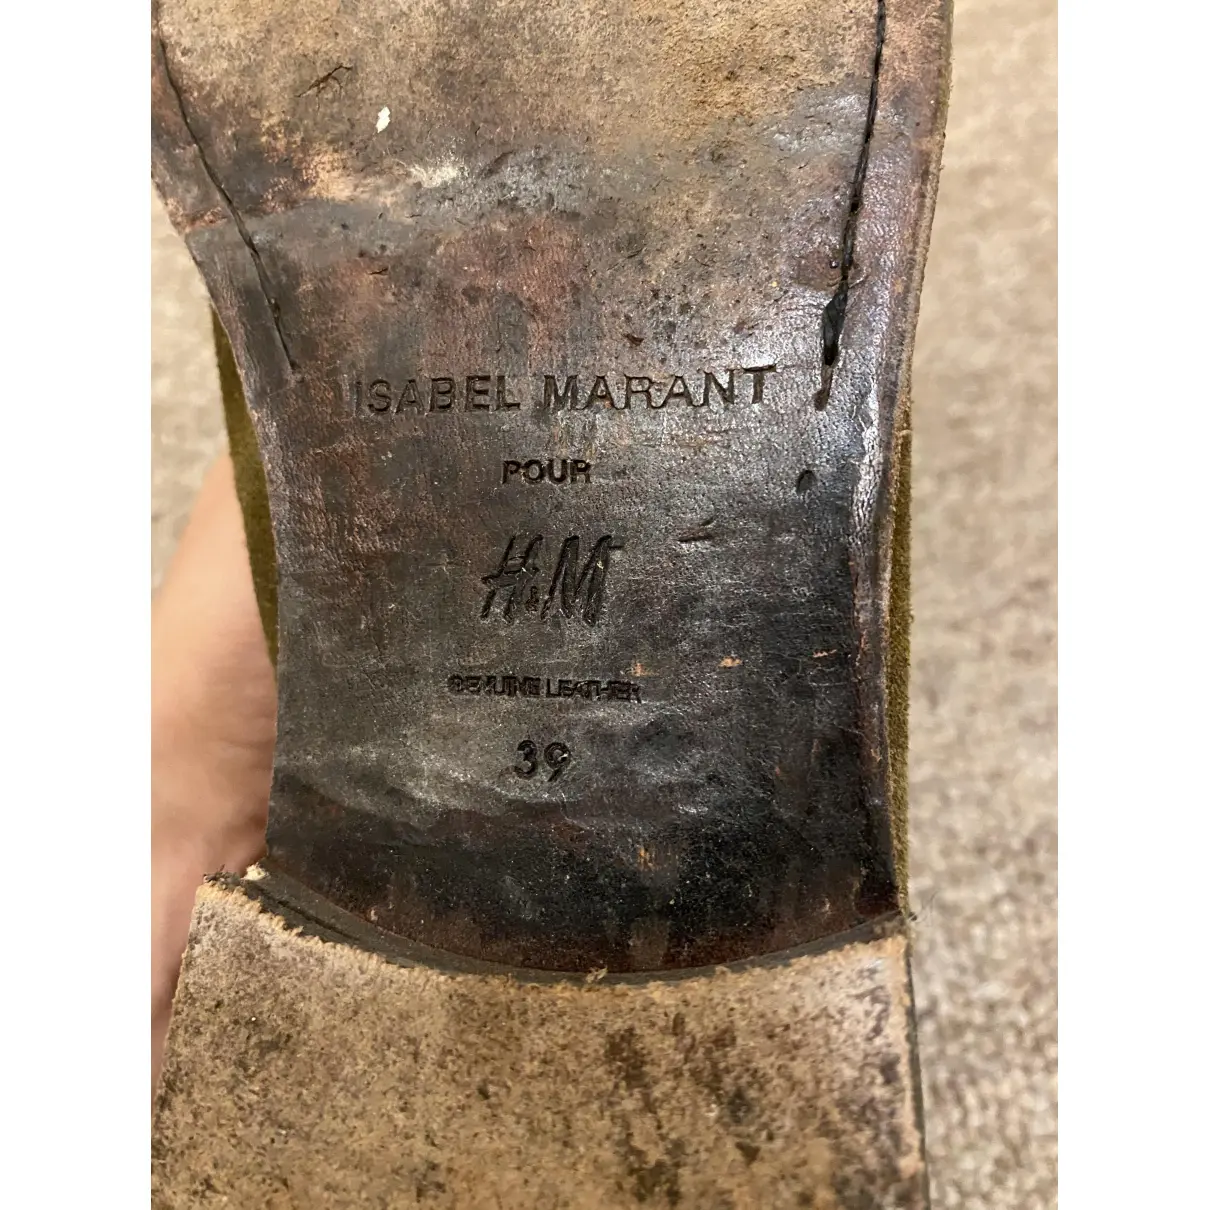 Biker boots Isabel Marant Pour H&M